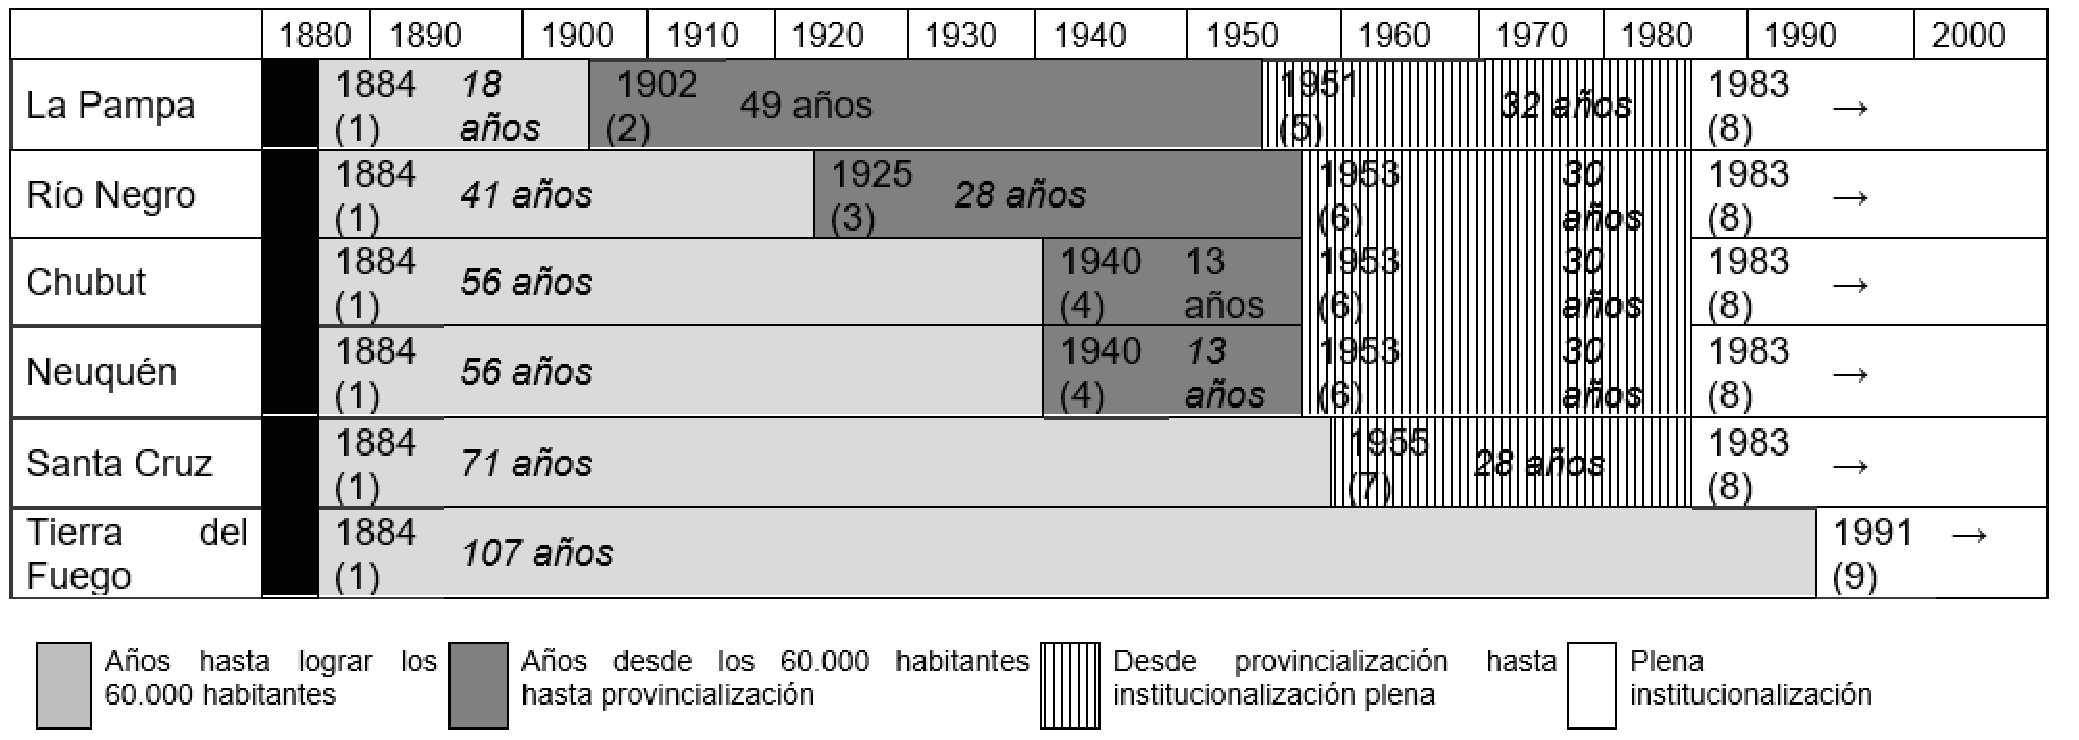 Transiciones
en la provincialización de los ex Territorios Nacionales de la Patagonia Años
1884 - 2000